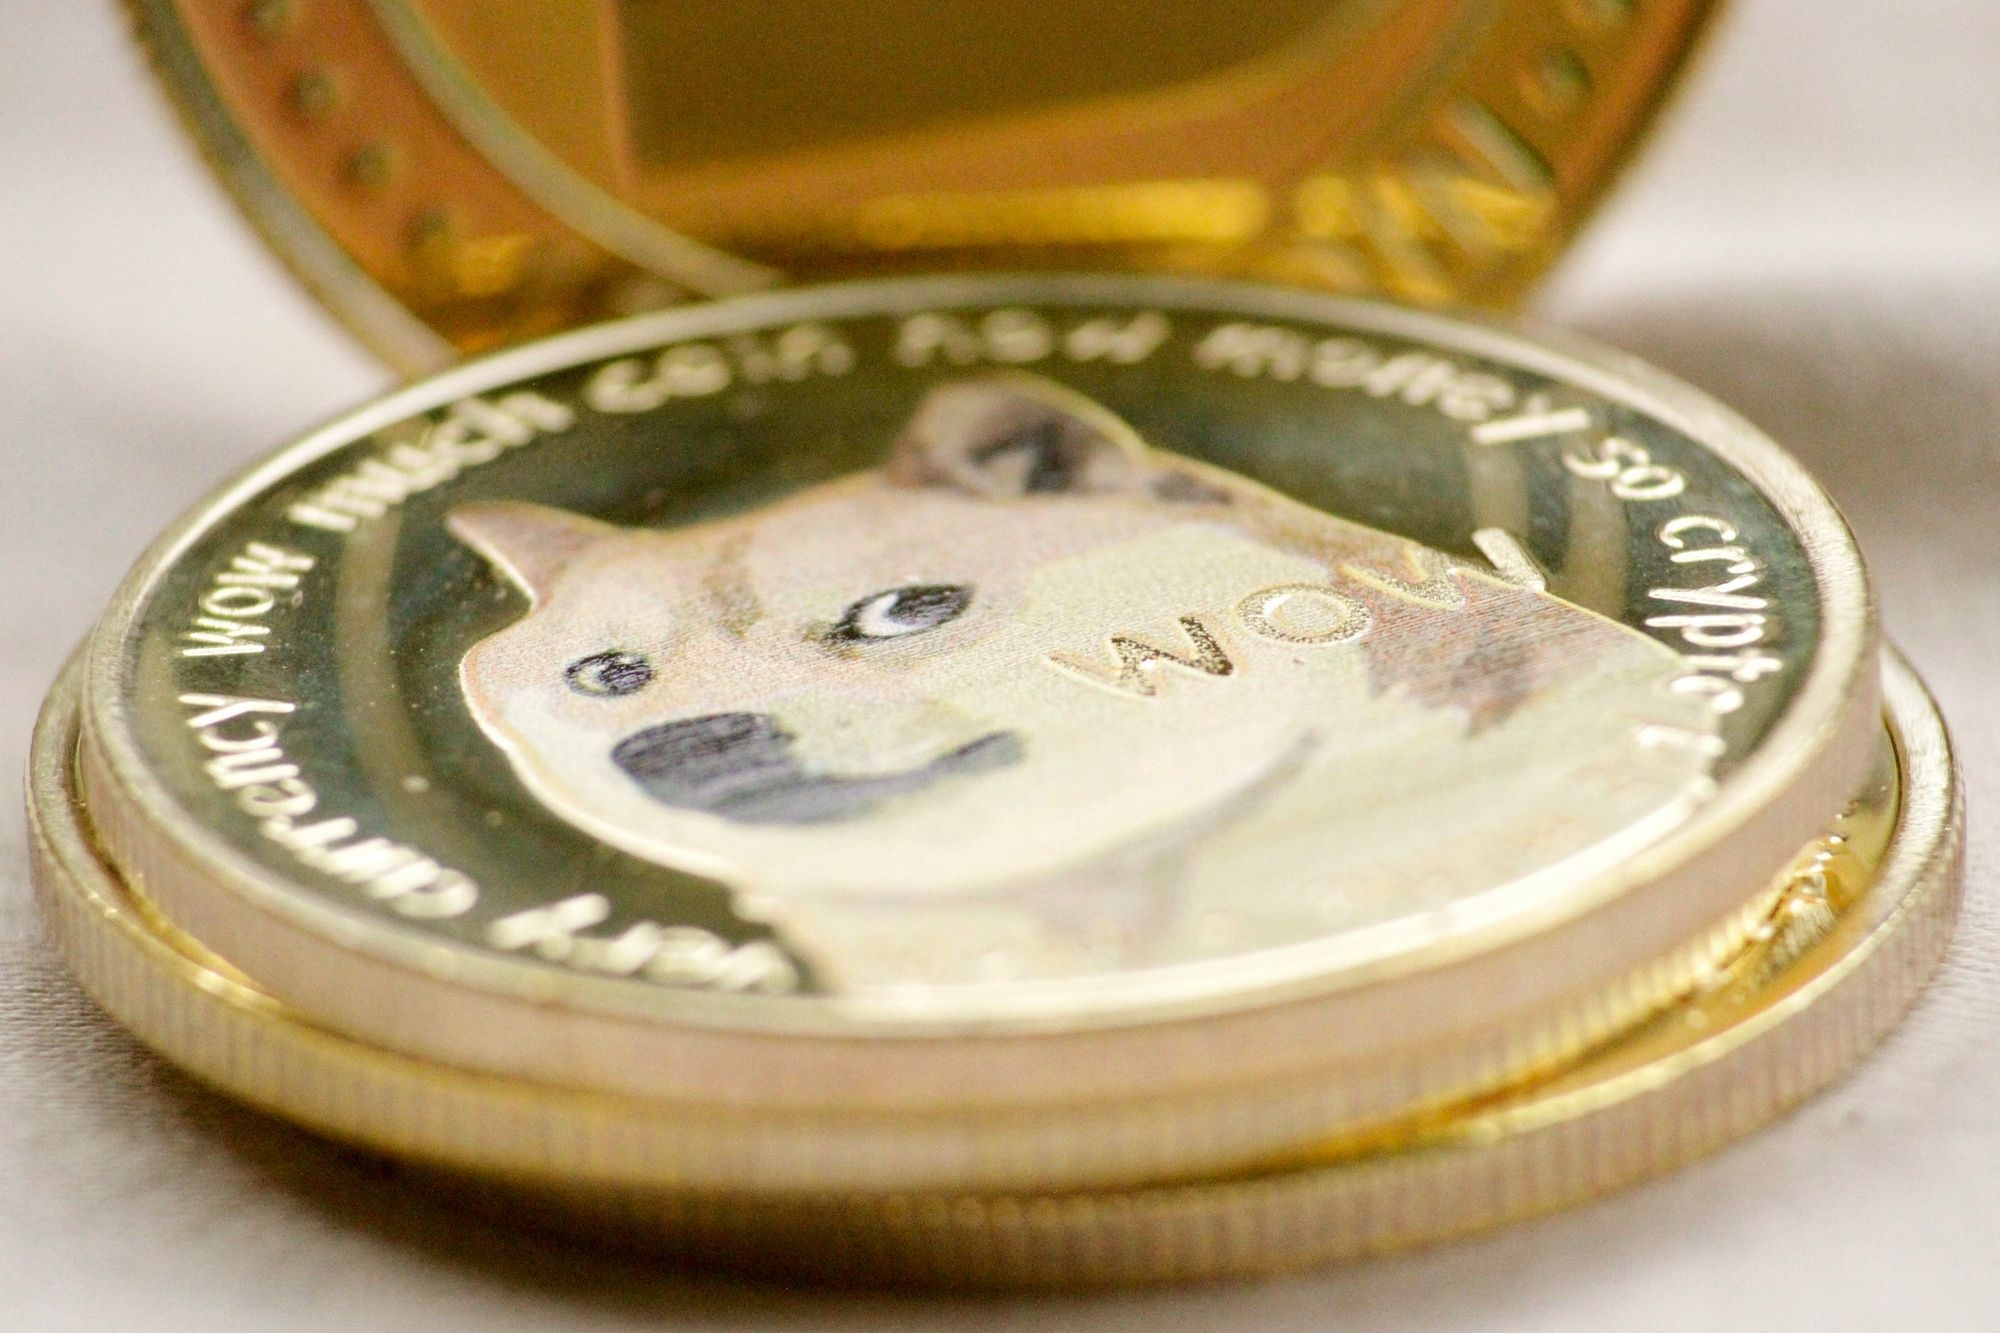 Kako bi Dogecoin izgledao da je u obliku kovanice